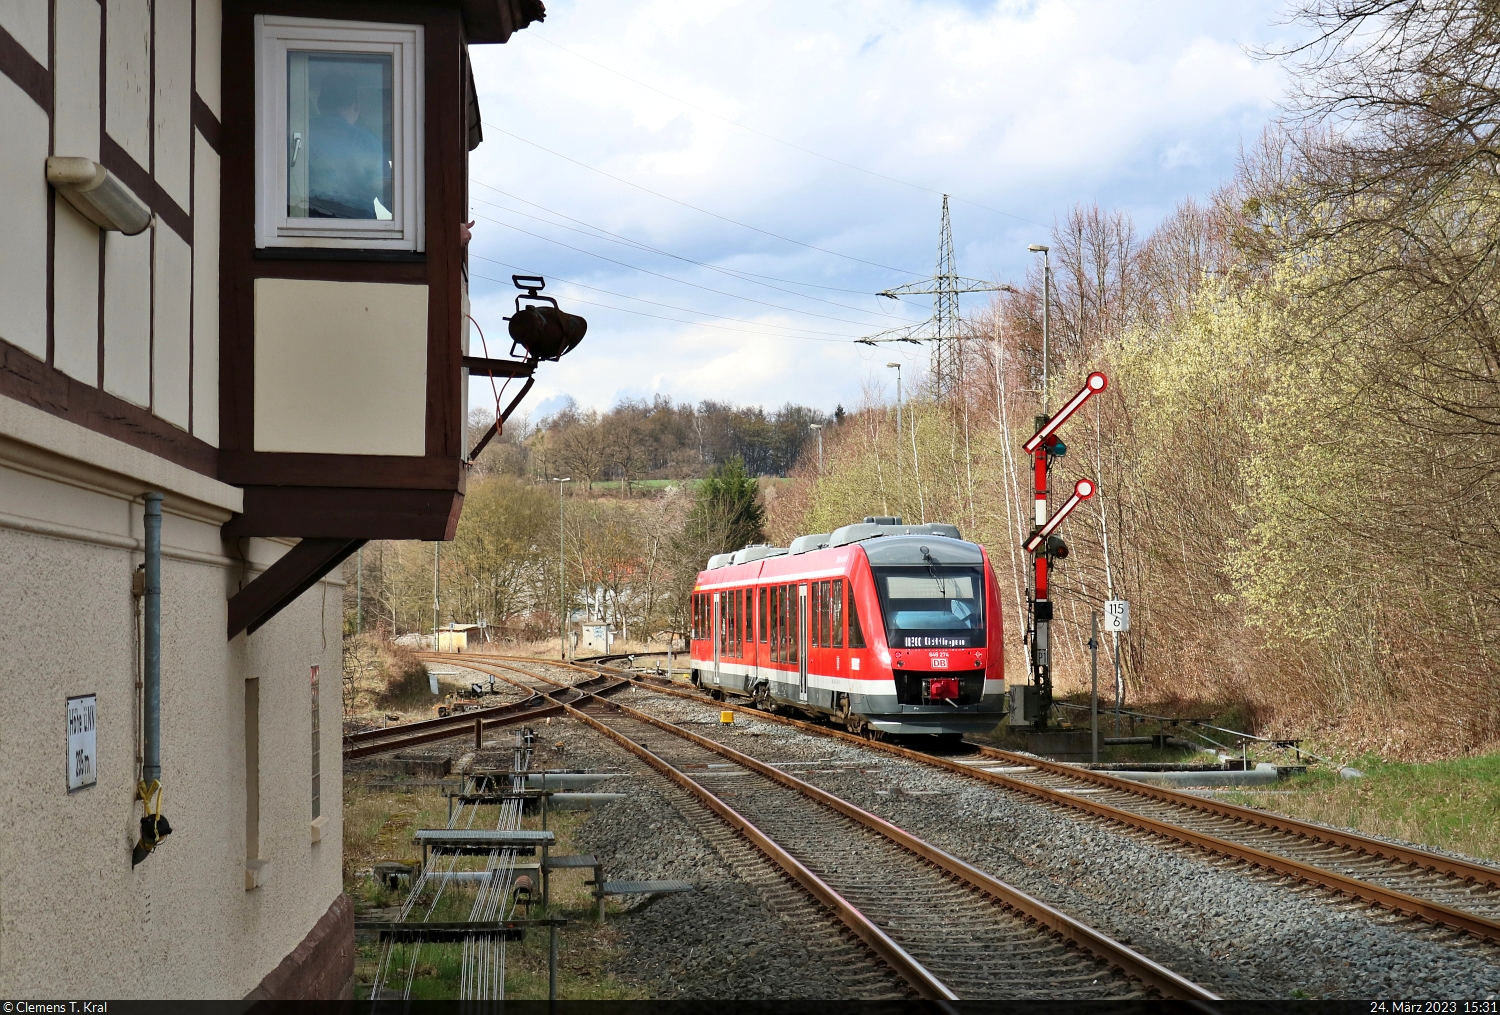 Mechanische Stellwerkstechnik und Formsignale: einfach romantisch. Soeben erhält 648 274-8  Wulften am Harz  (Alstom Coradia LINT 41) Ausfahrt im Bahnhof Herzberg(Harz) Richtung Northeim(Han).
Auf ihn wurde vom Ende des Bahnsteigs 2/4 nachgeschossen.

🧰 Harz-Weser-Bahn (DB Regio Nord)
🚝 RB 14016 (RB80) Nordhausen–Göttingen [+5]
🕓 24.3.2023 | 15:31 Uhr